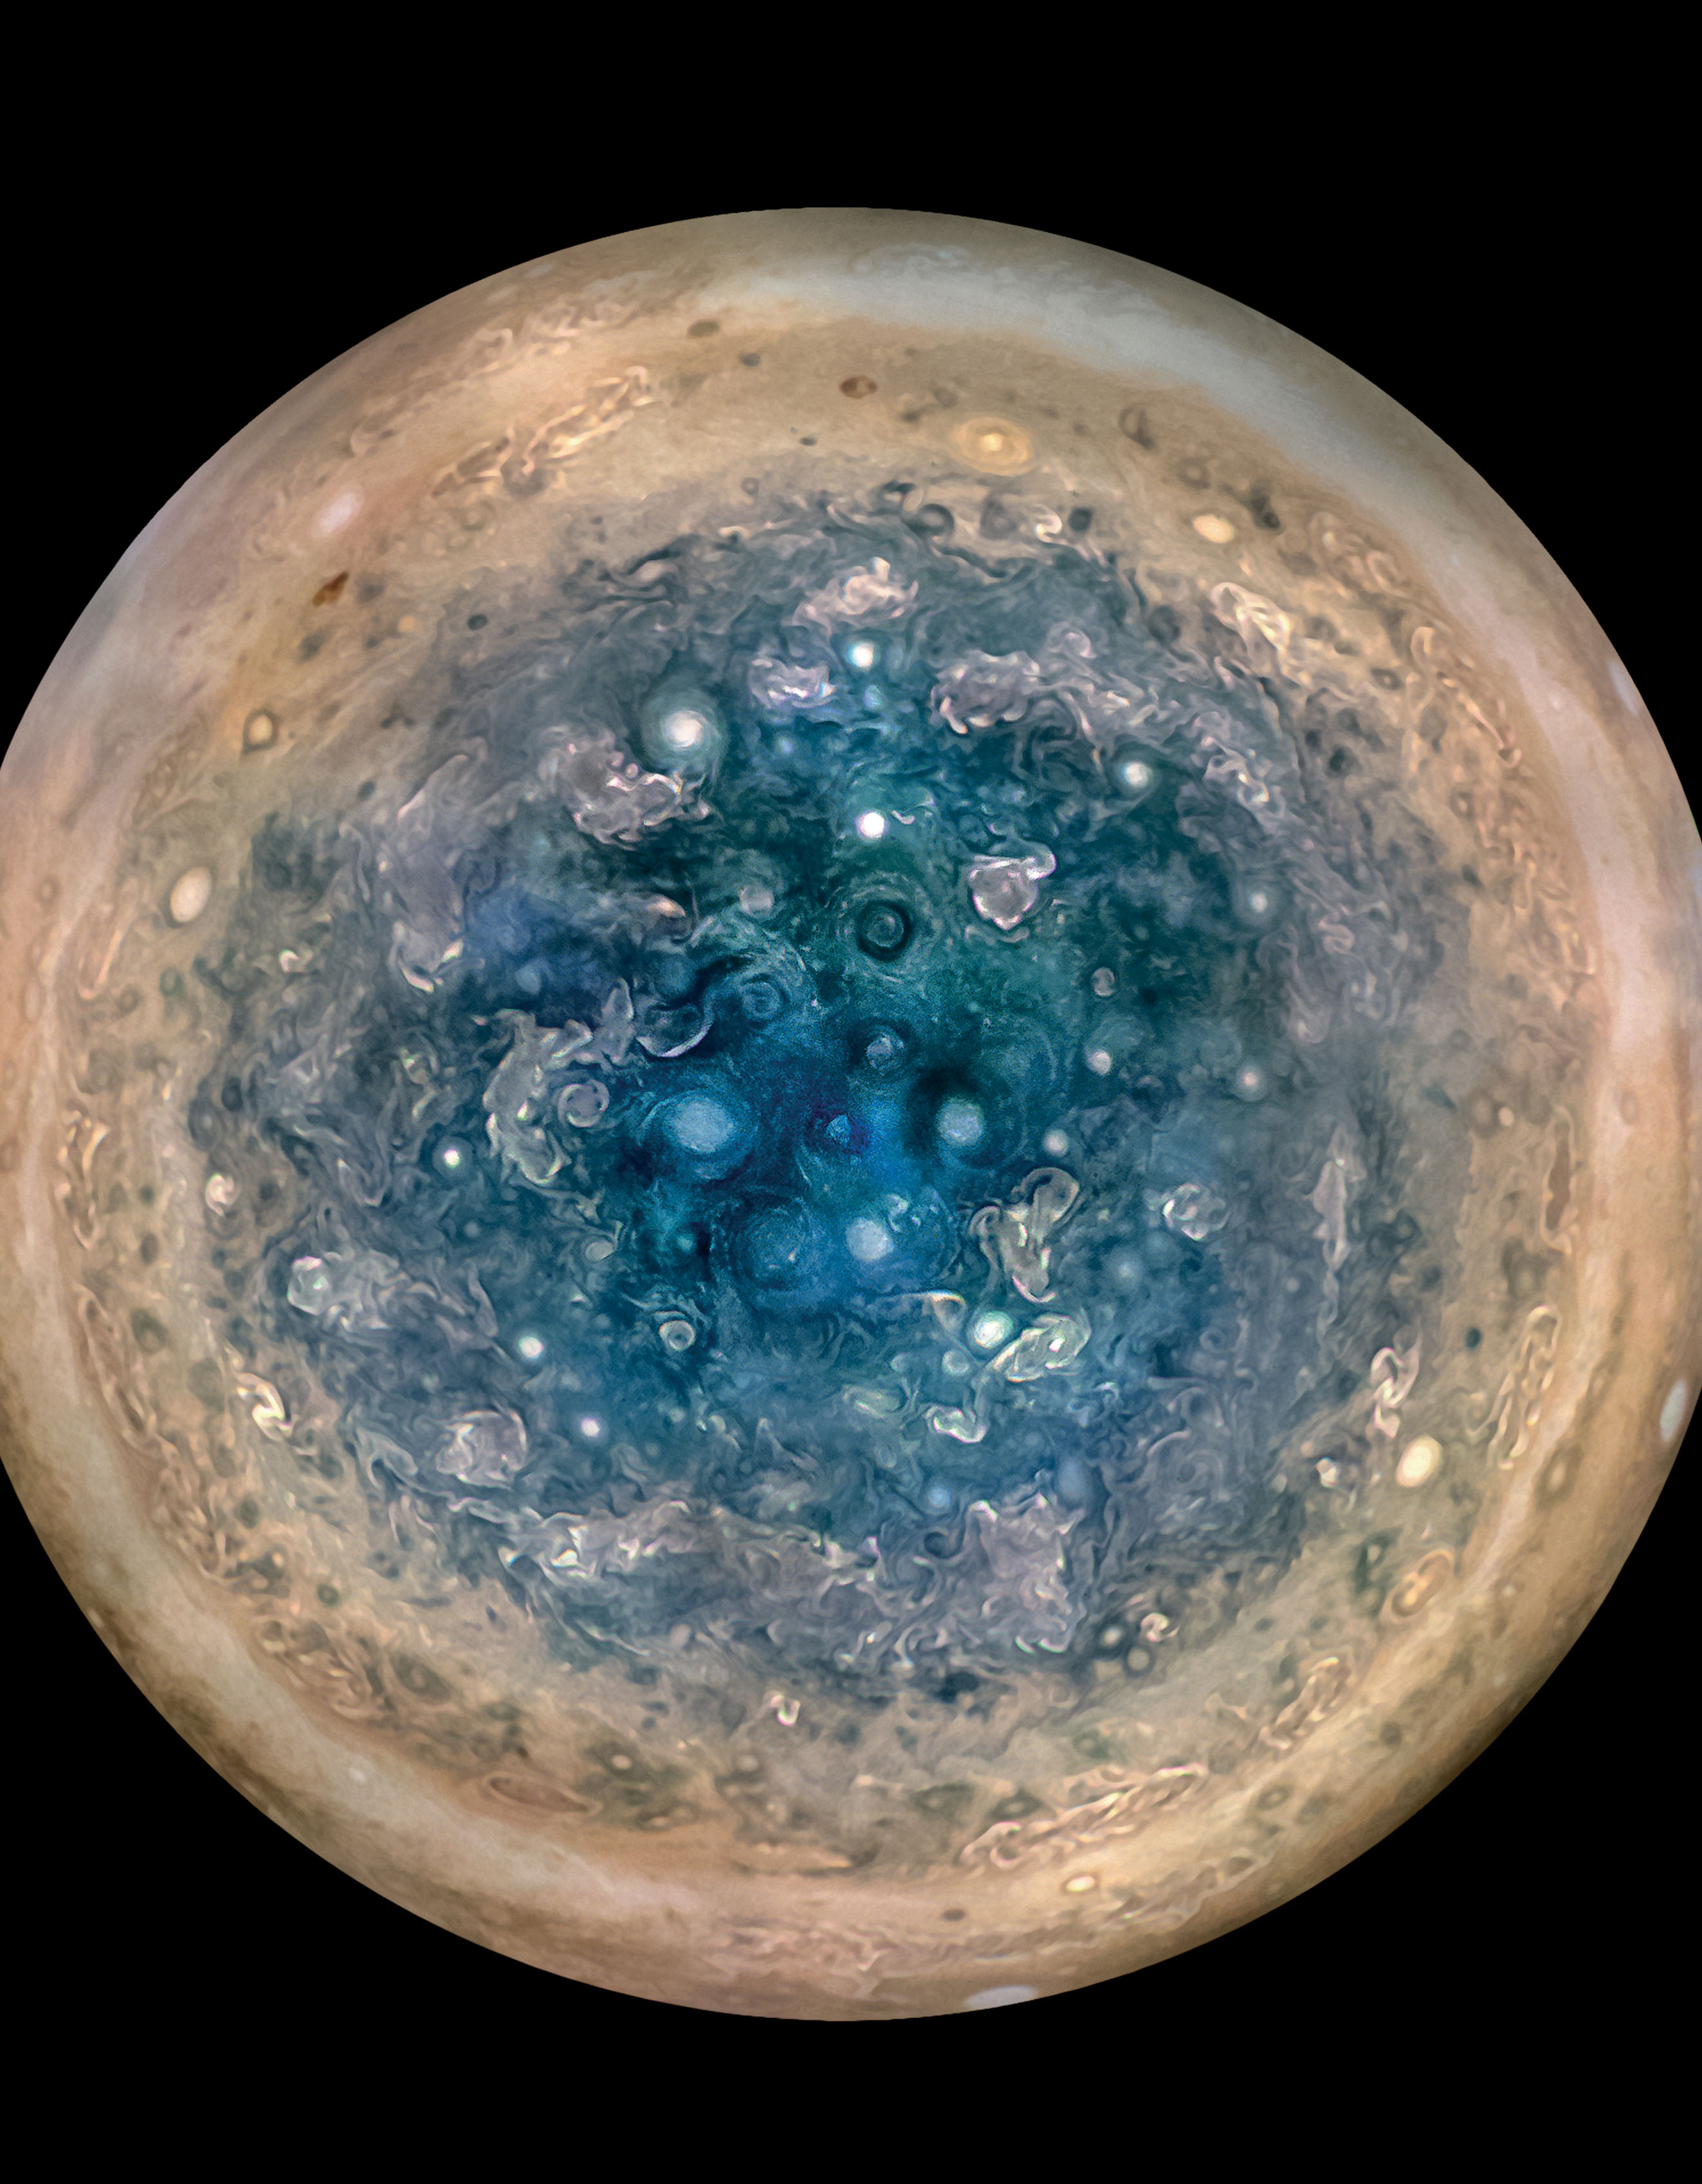 17 05 26 ここまでわかった 最新の木星像 Nasaの木星探査機ジュノーの最新画像と情報を翻訳